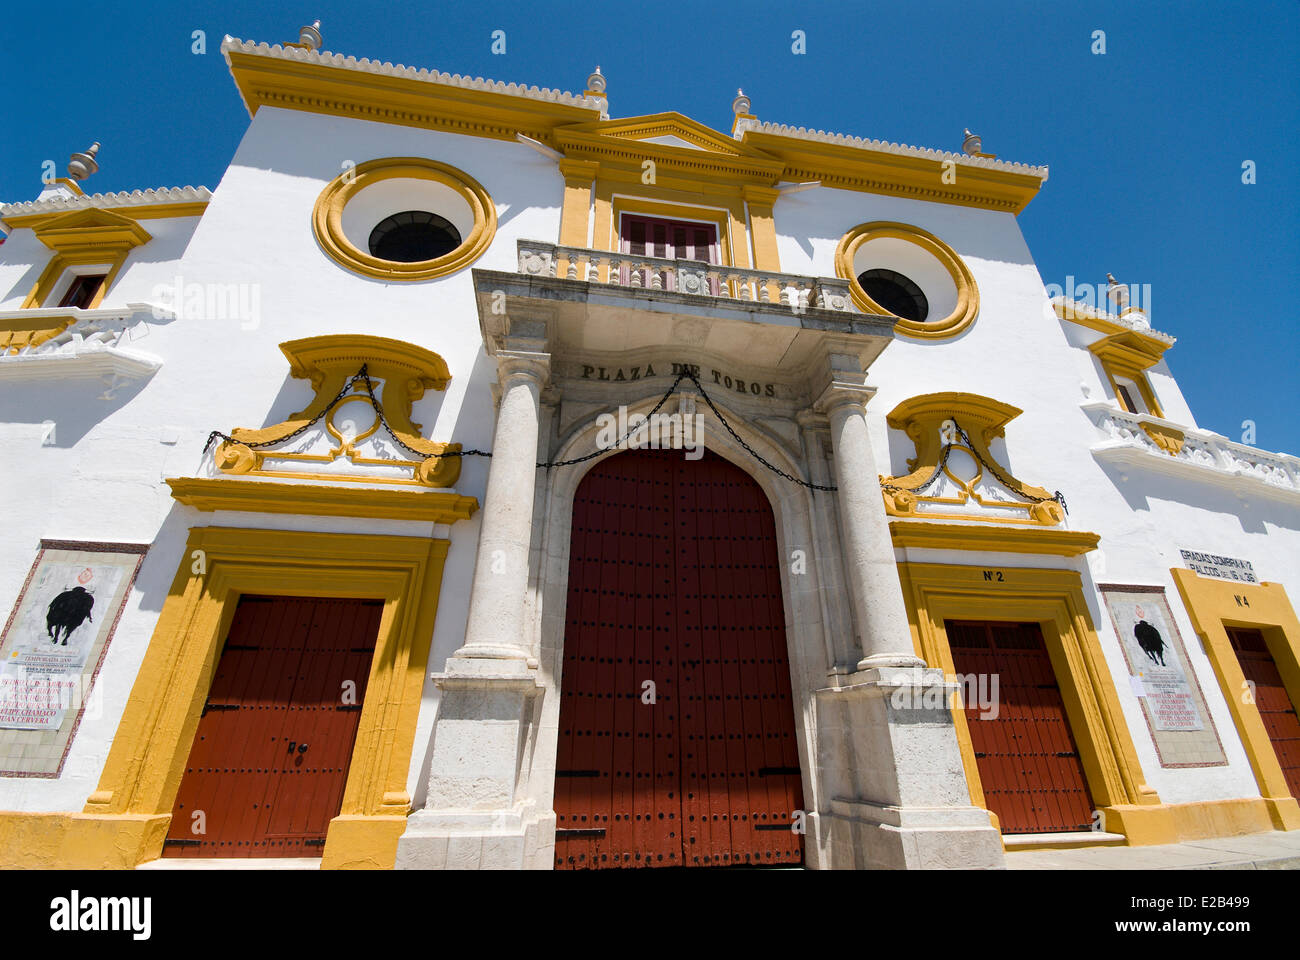 Spagna, Andalusia Siviglia, Plaza de toros, arena dei tori Maestranza xviii secolo sivigliano barocco Foto Stock